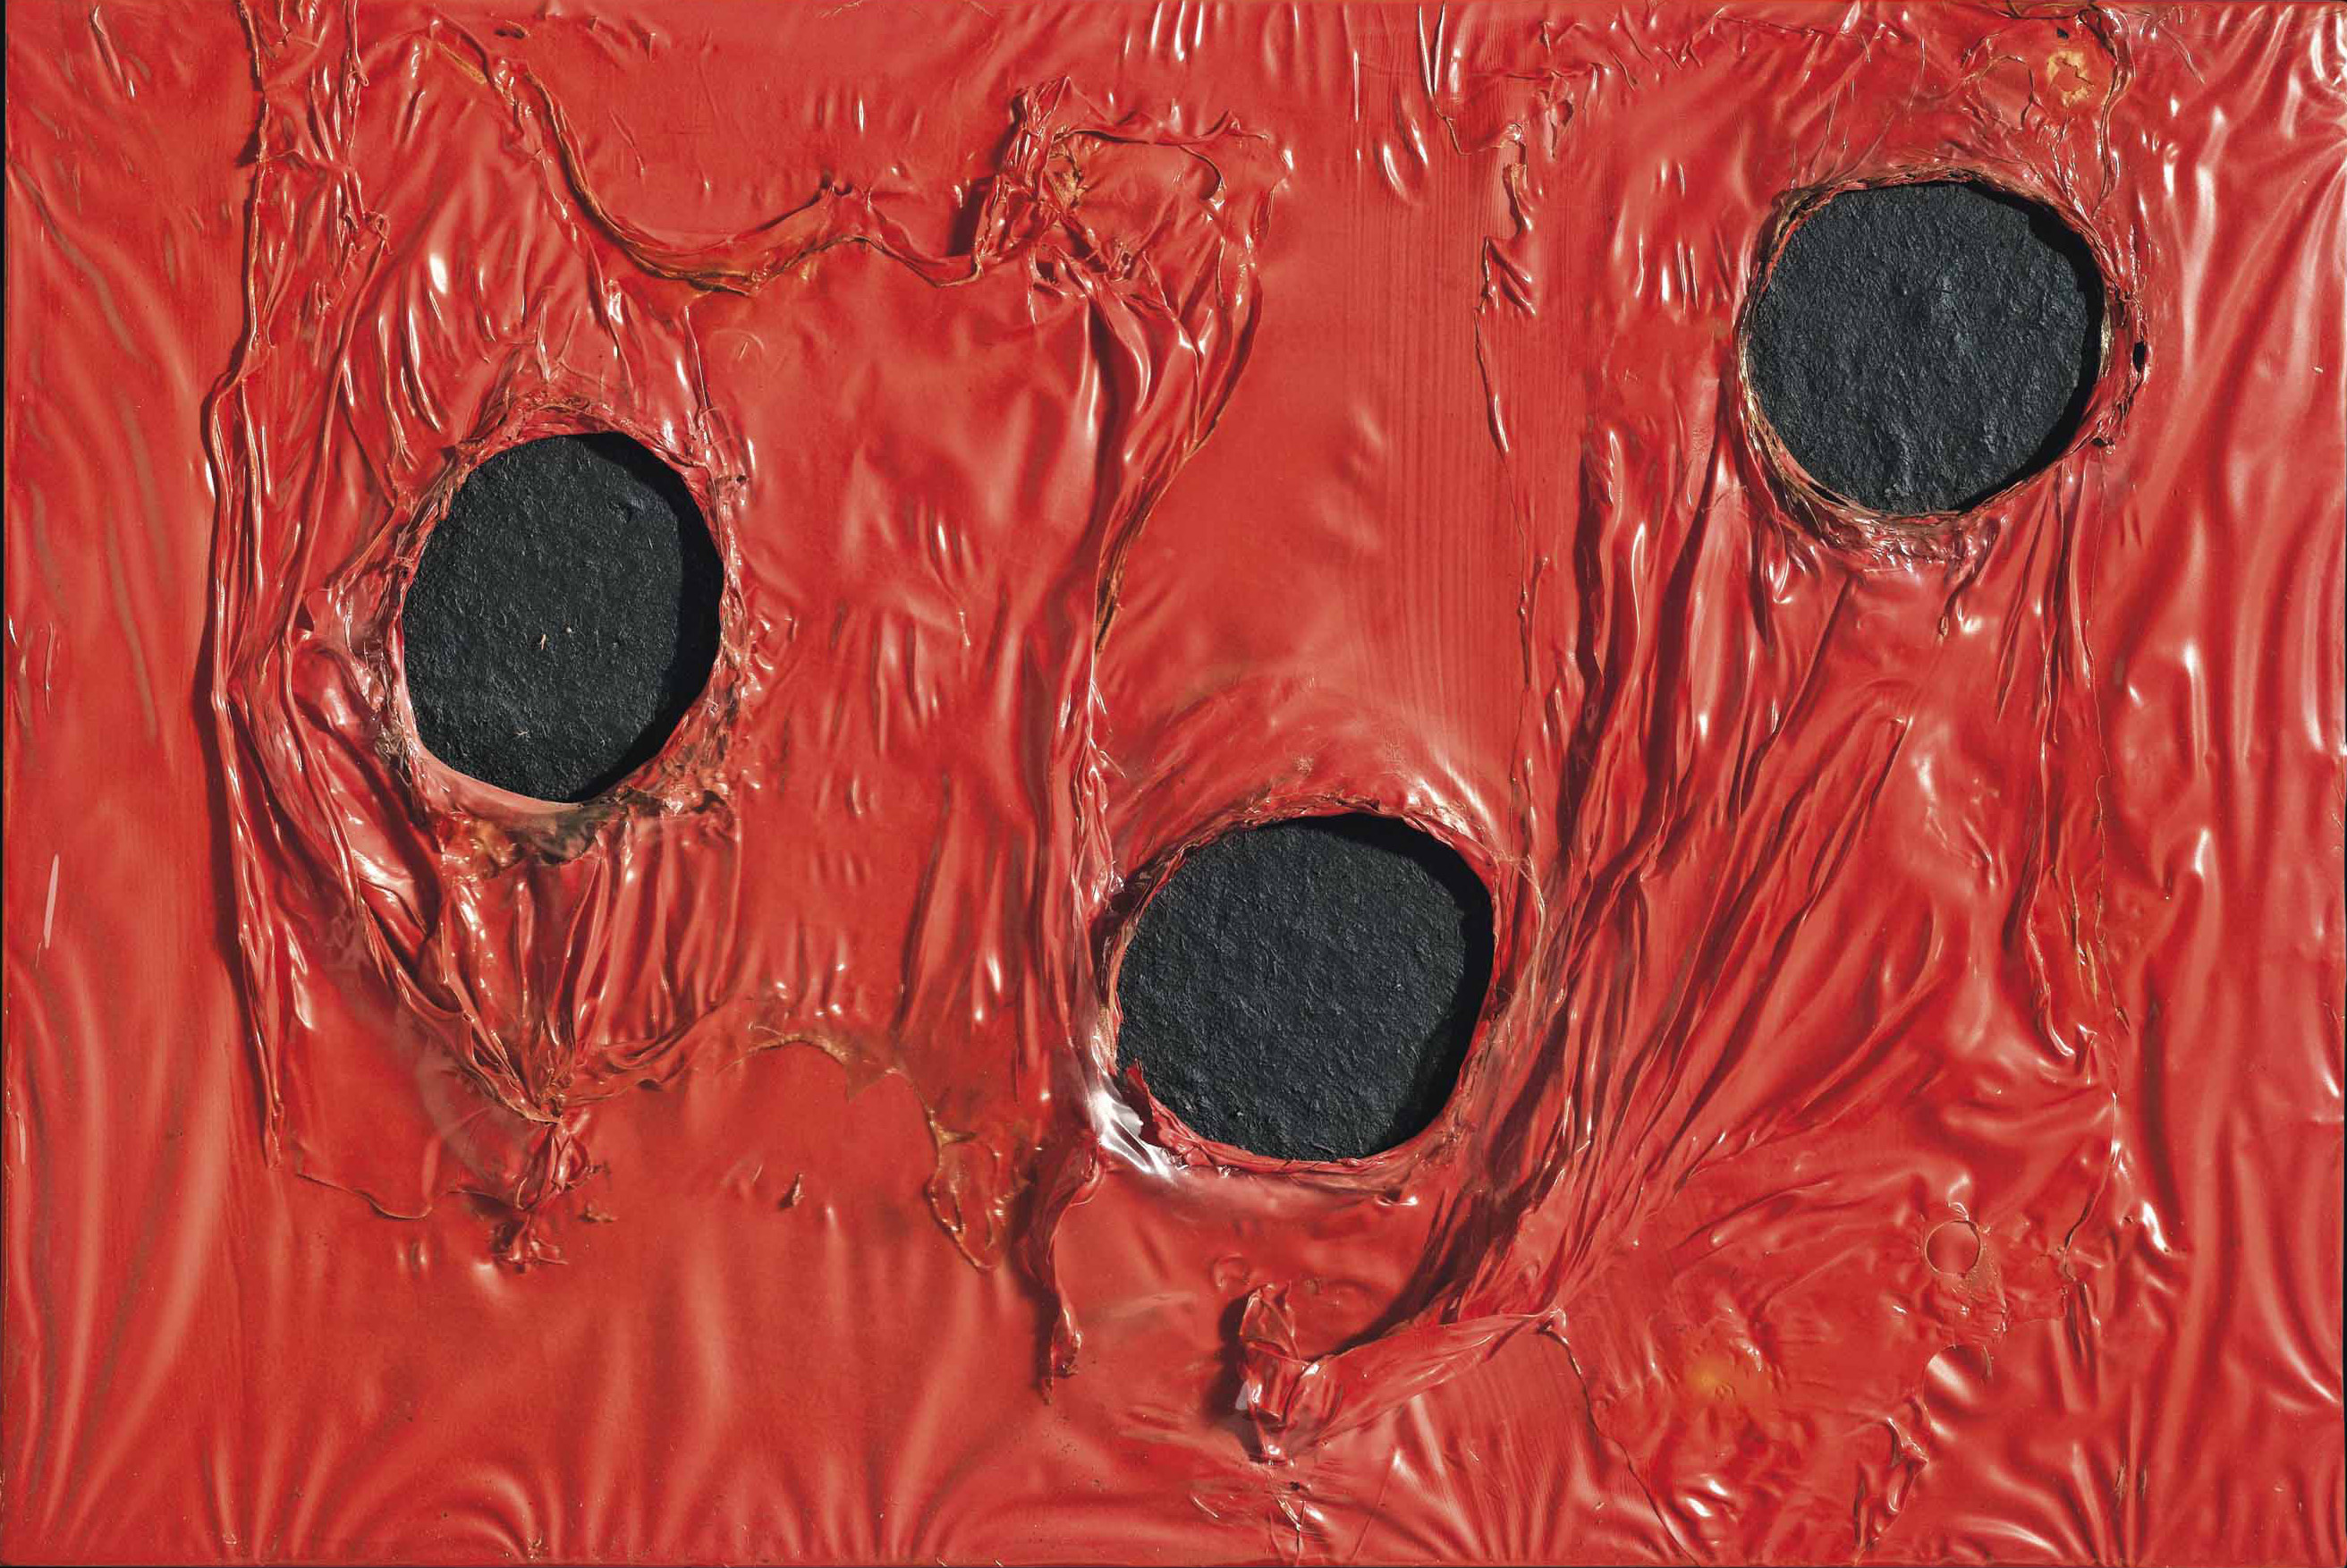 Alberto burri  rosso plastica  1968